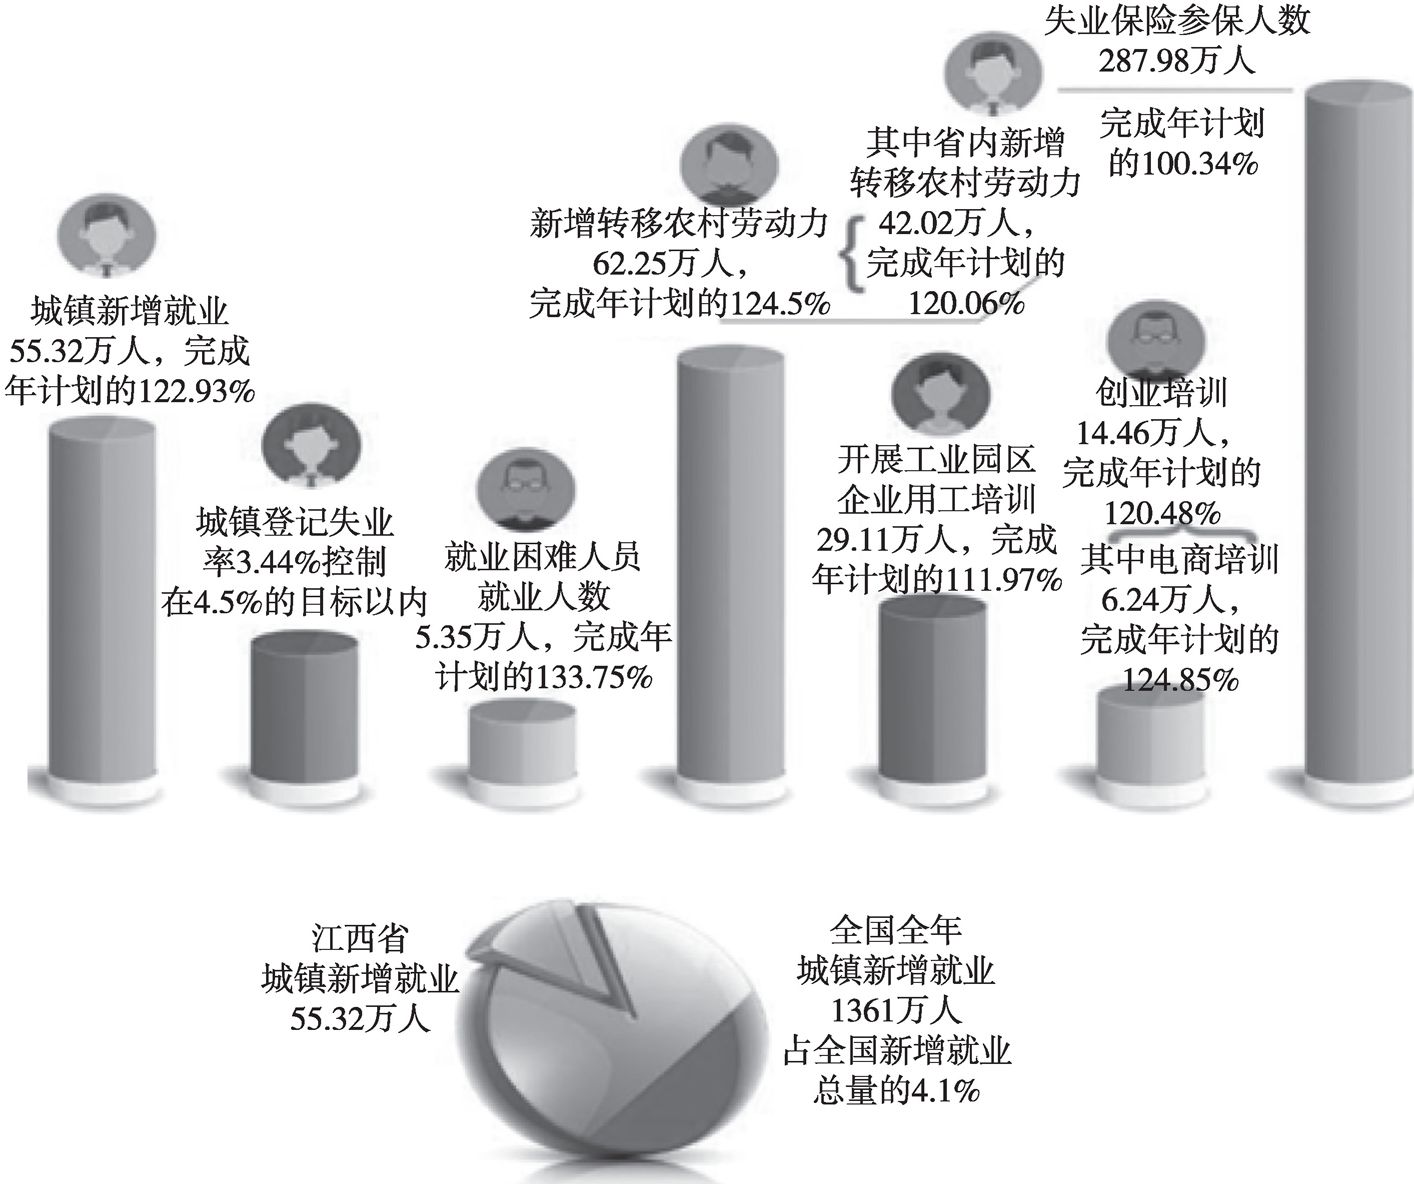 图2 2018年江西省就业服务工作主要数据